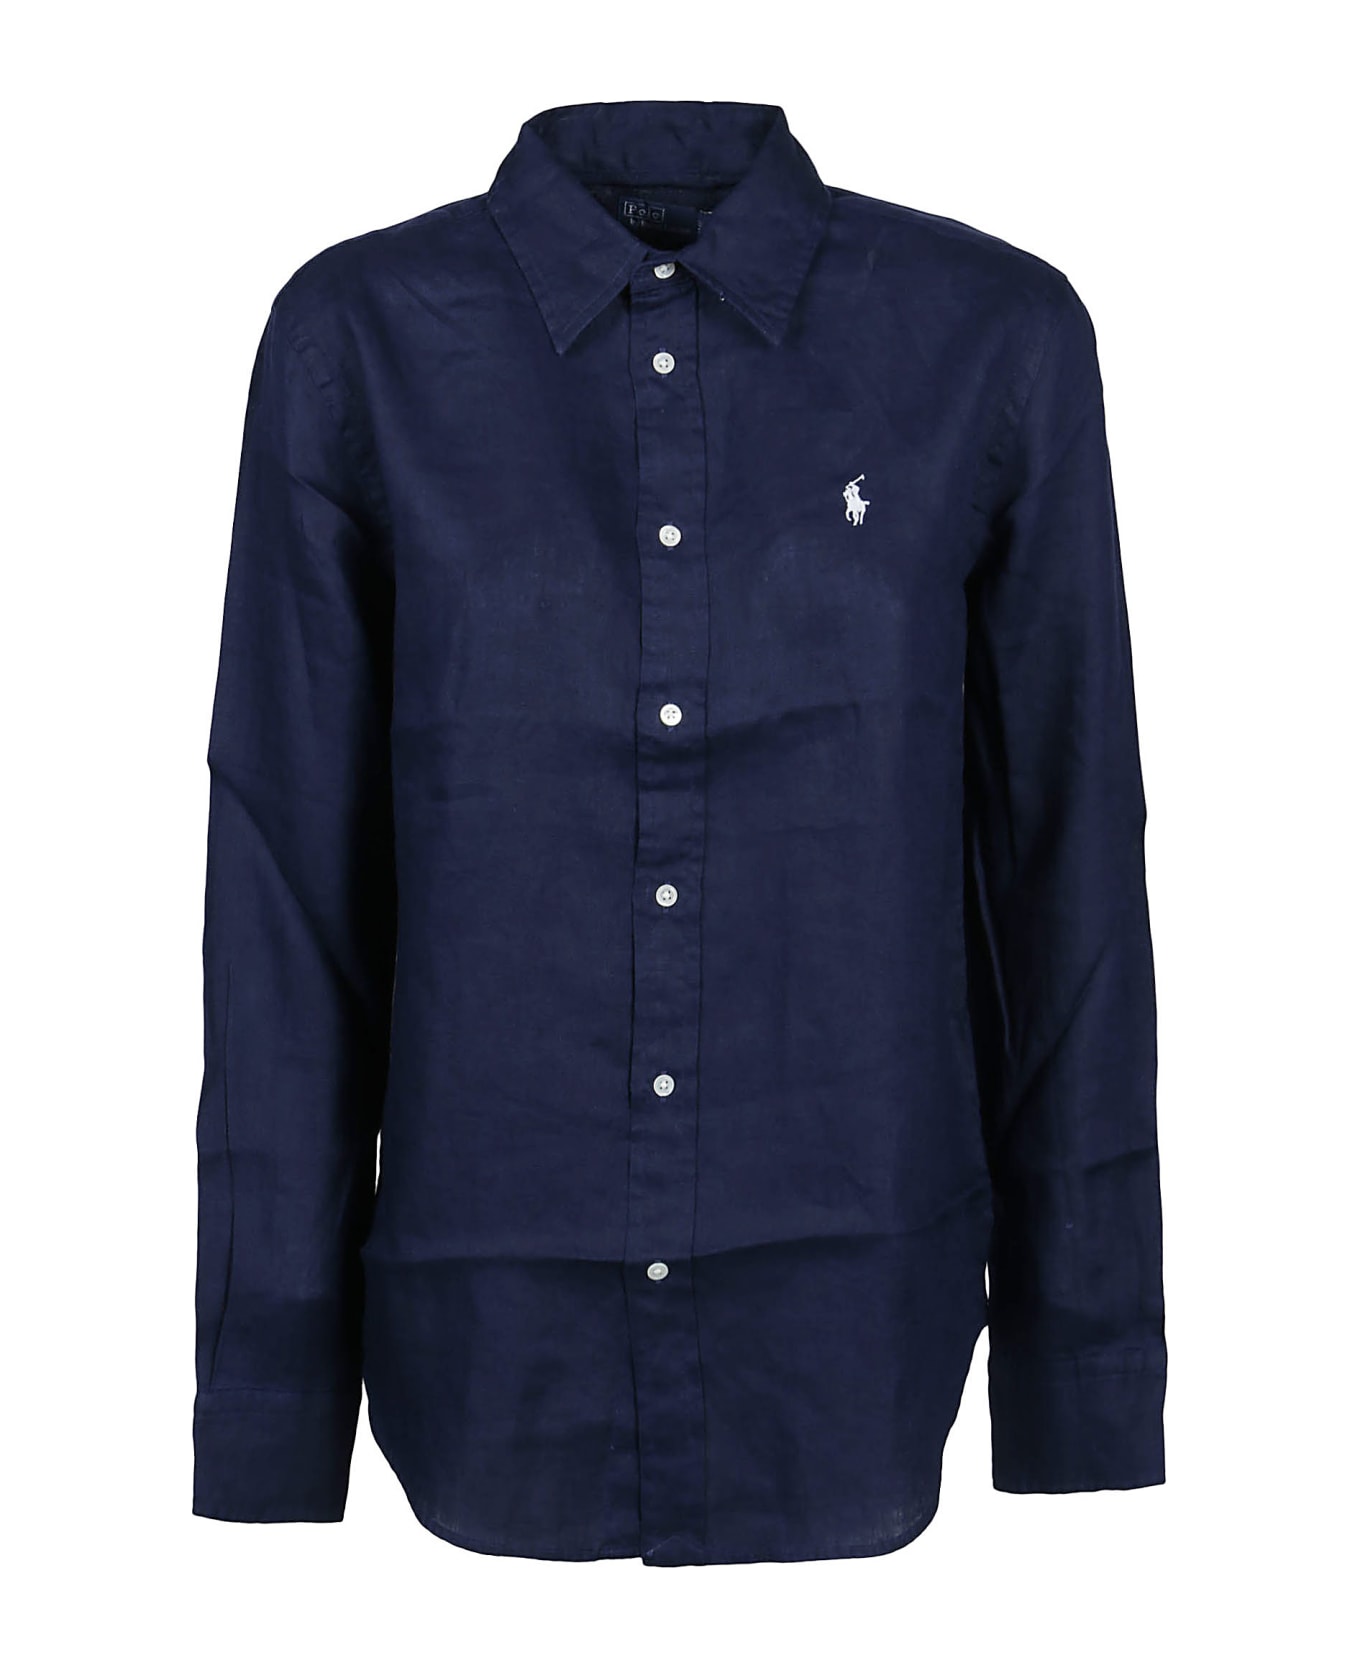 Polo Ralph Lauren Long Sleeve Button Front Shirt - Blue